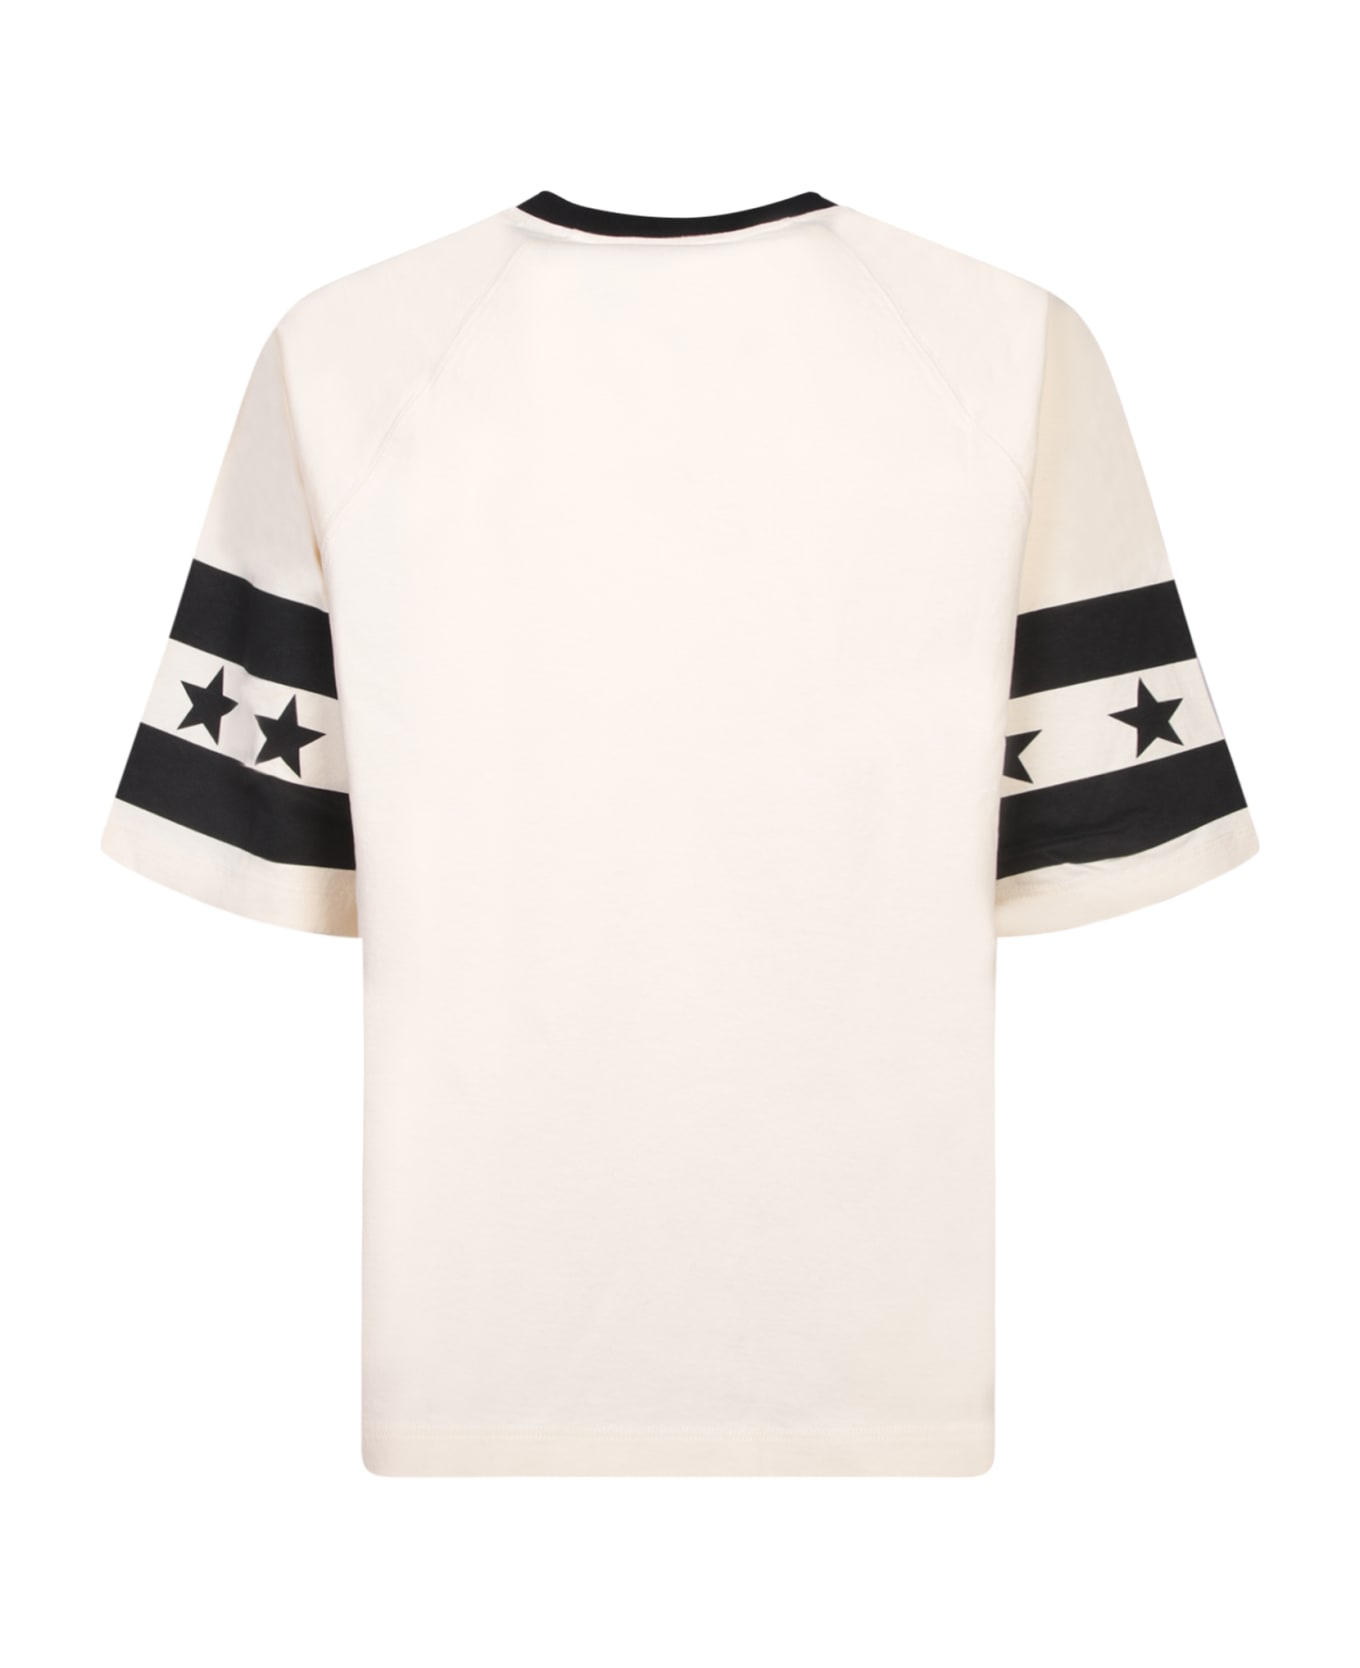 Balmain Cream And Black Stars T-shirt - White